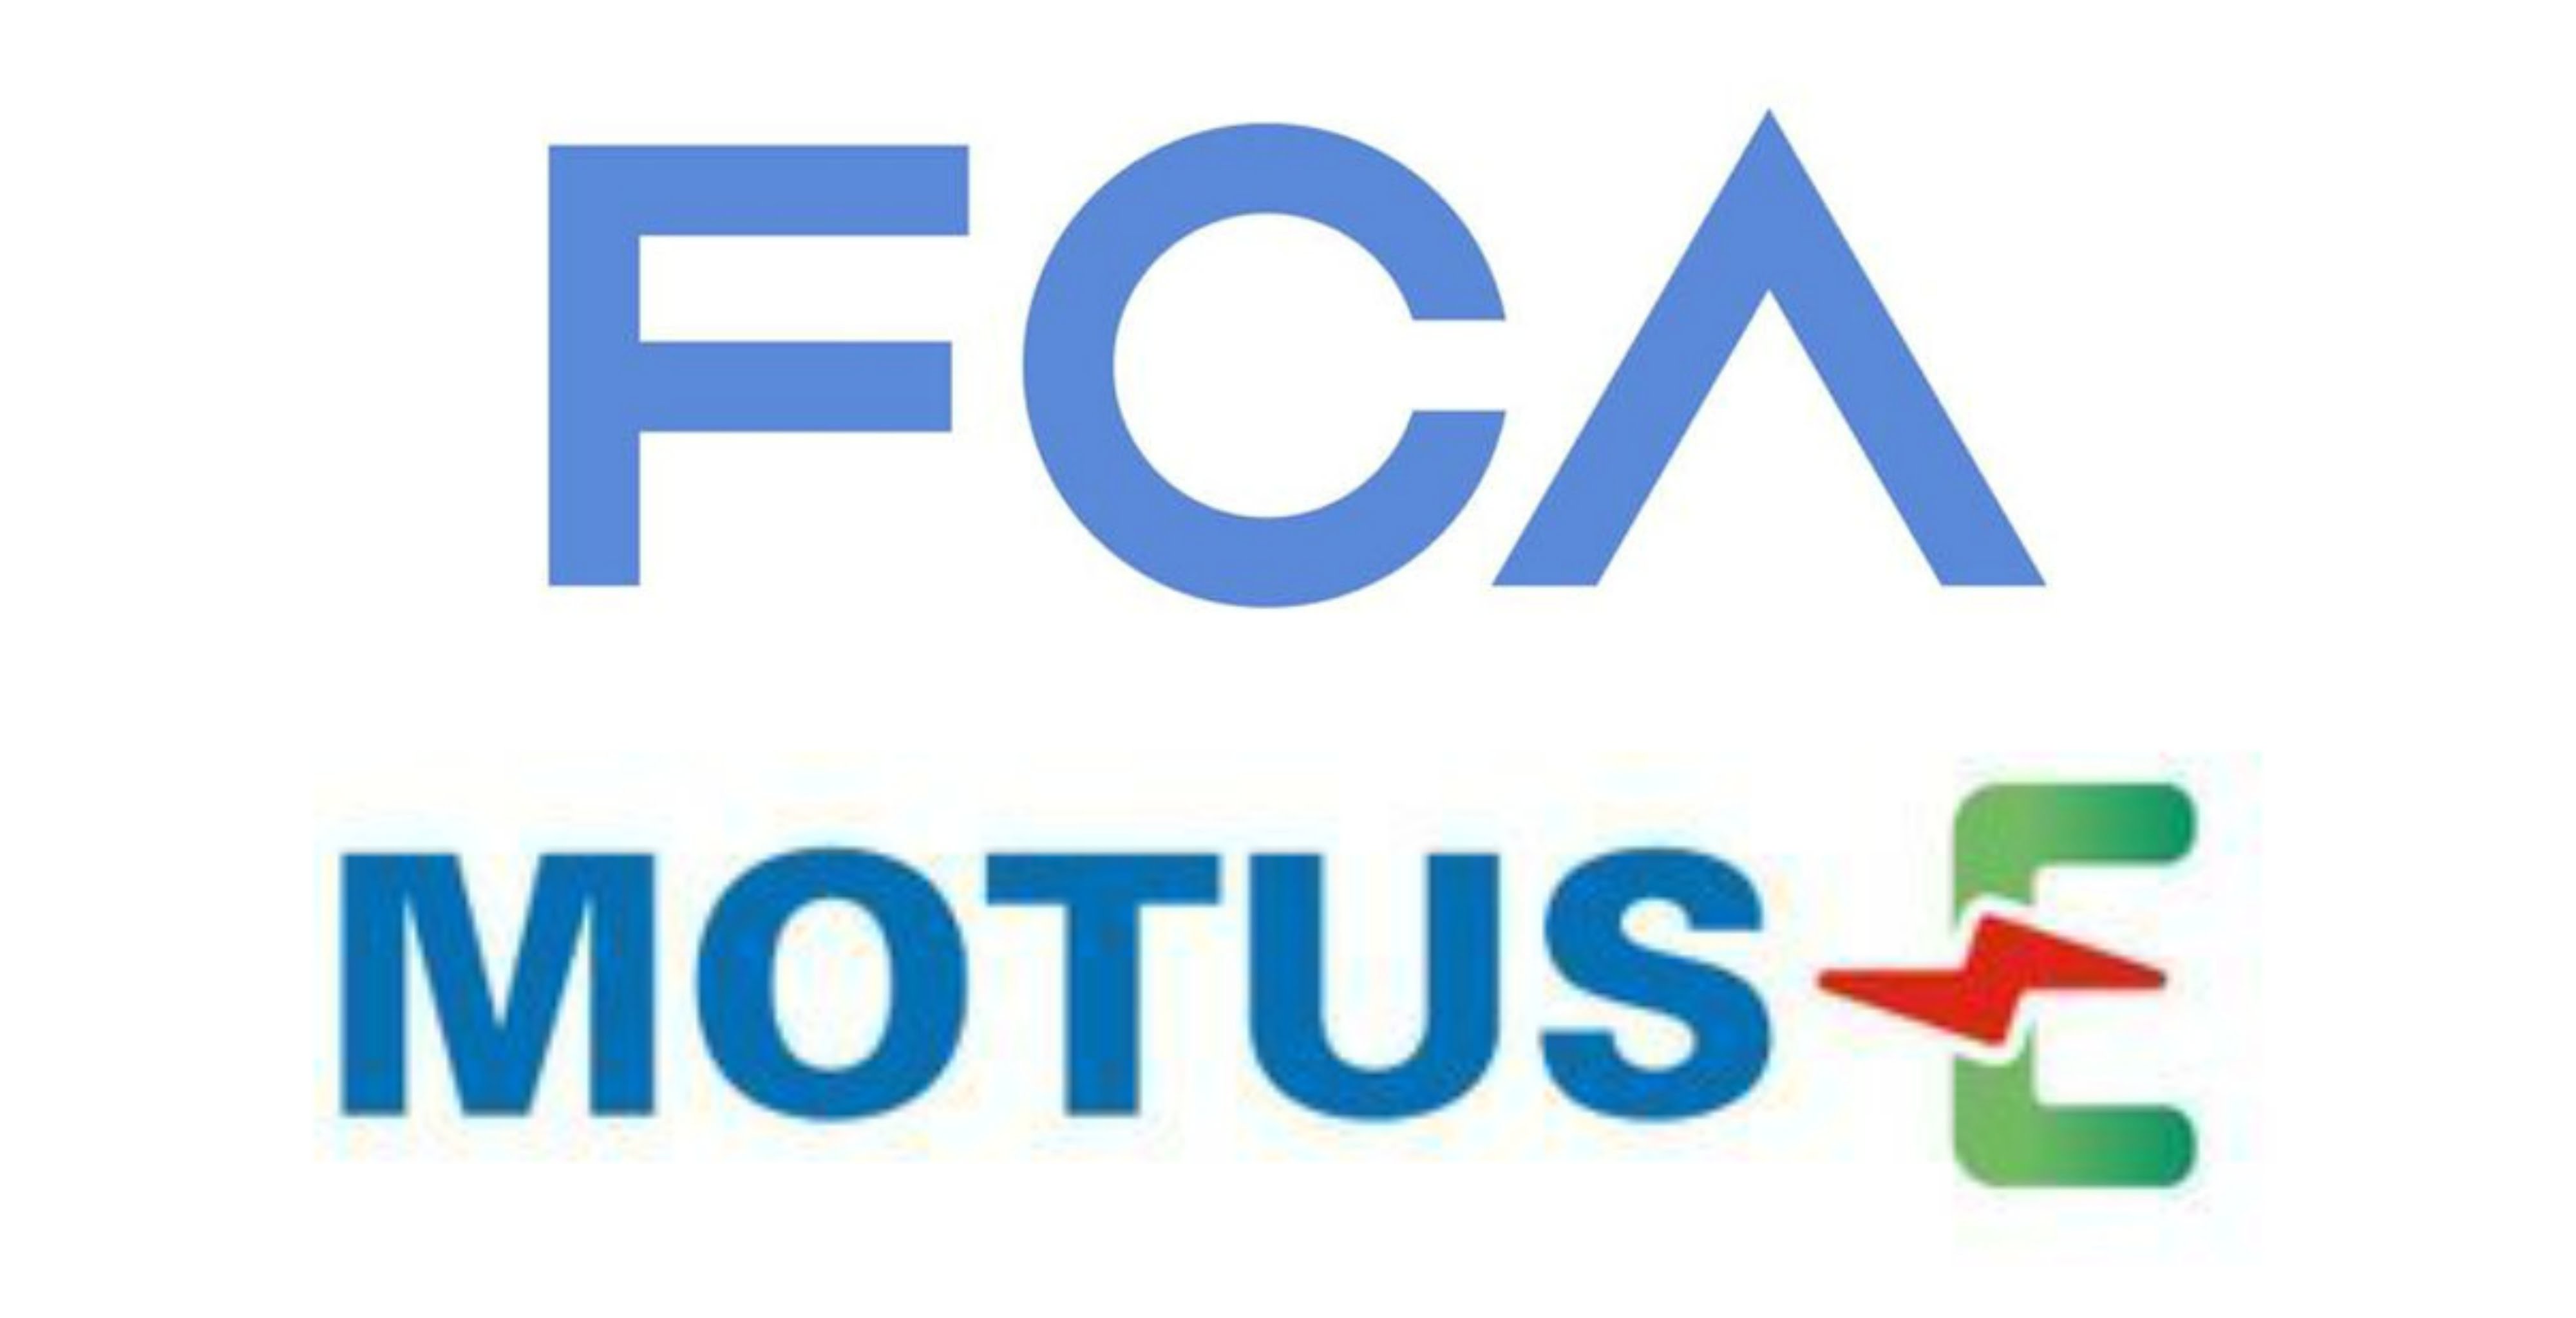 FCA Motus-e